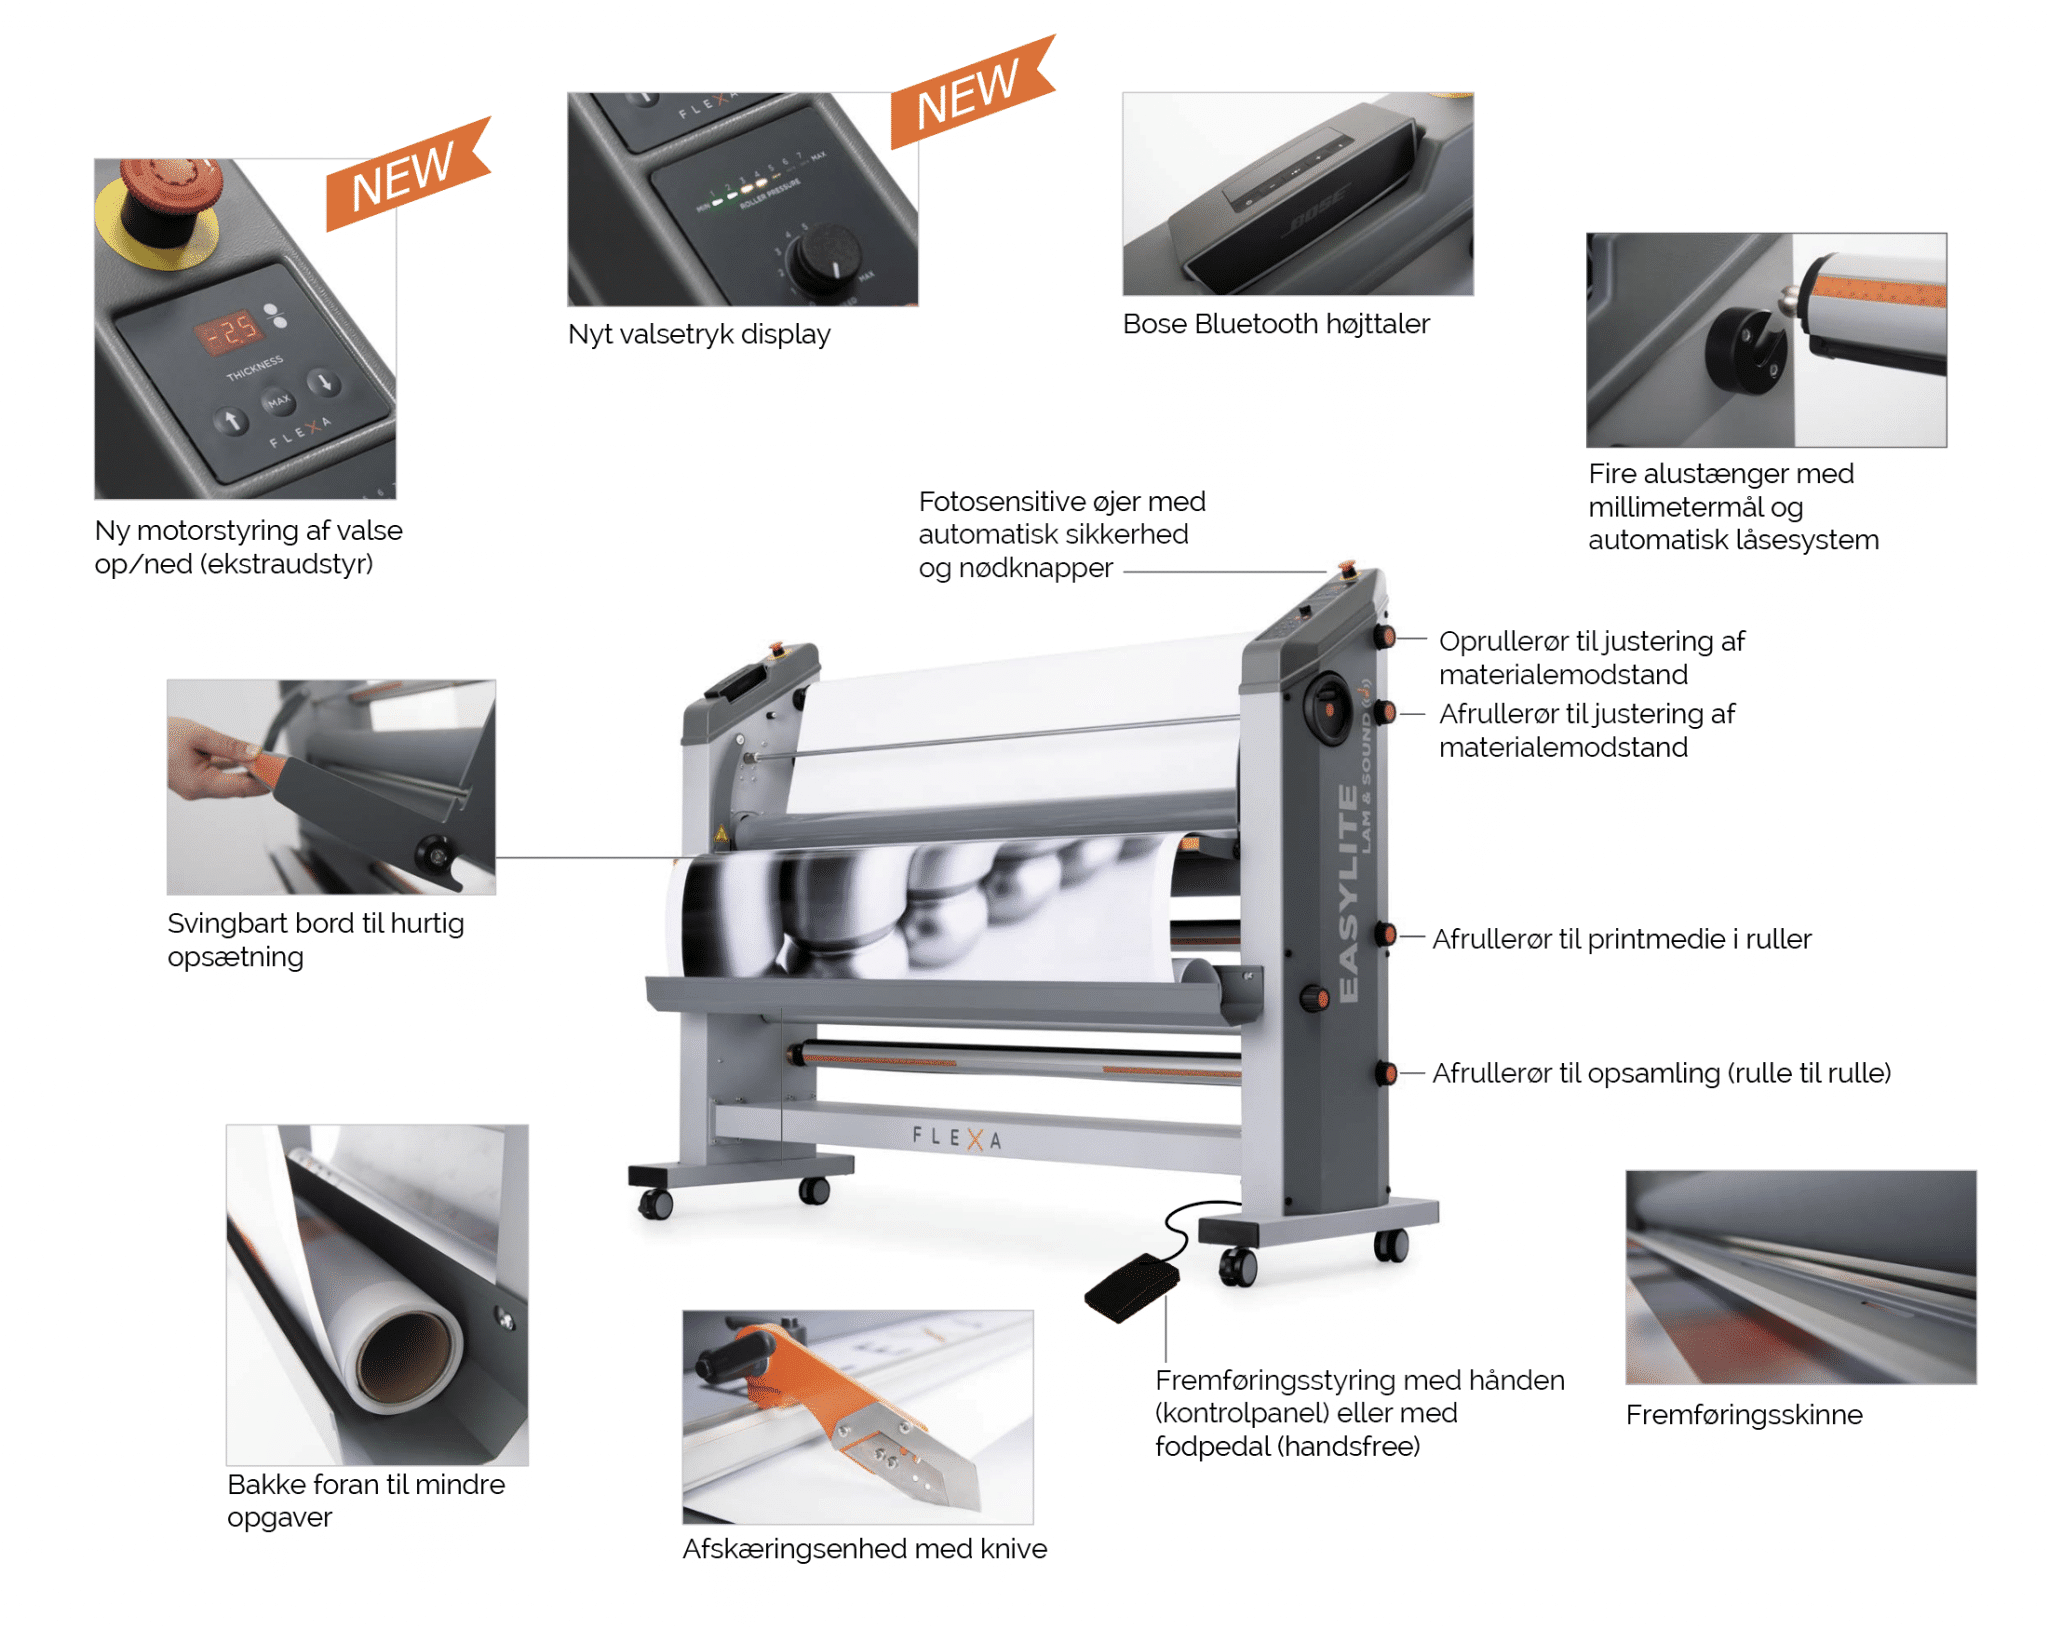 Ny Flexa laminator, tilbud laminatorer og tip til rød løber fra vikiallo uge 20 Screenshot 2020 05 06 at 14.20.24 vikiallo